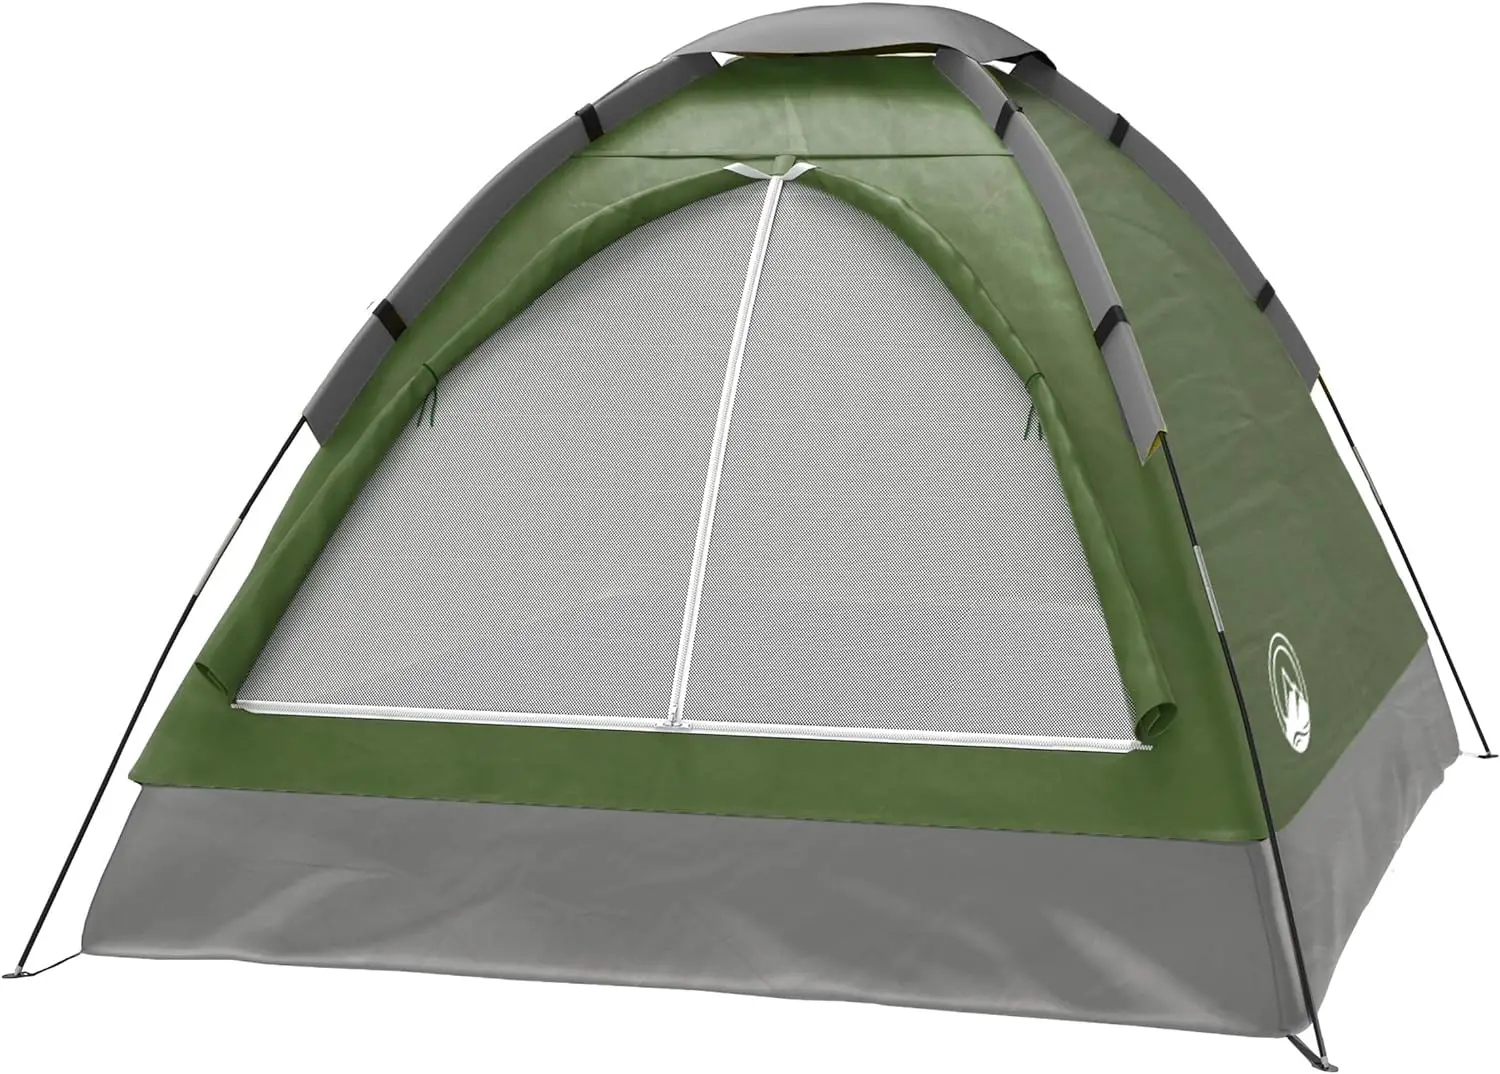 Wakeman Lightweight Tent review